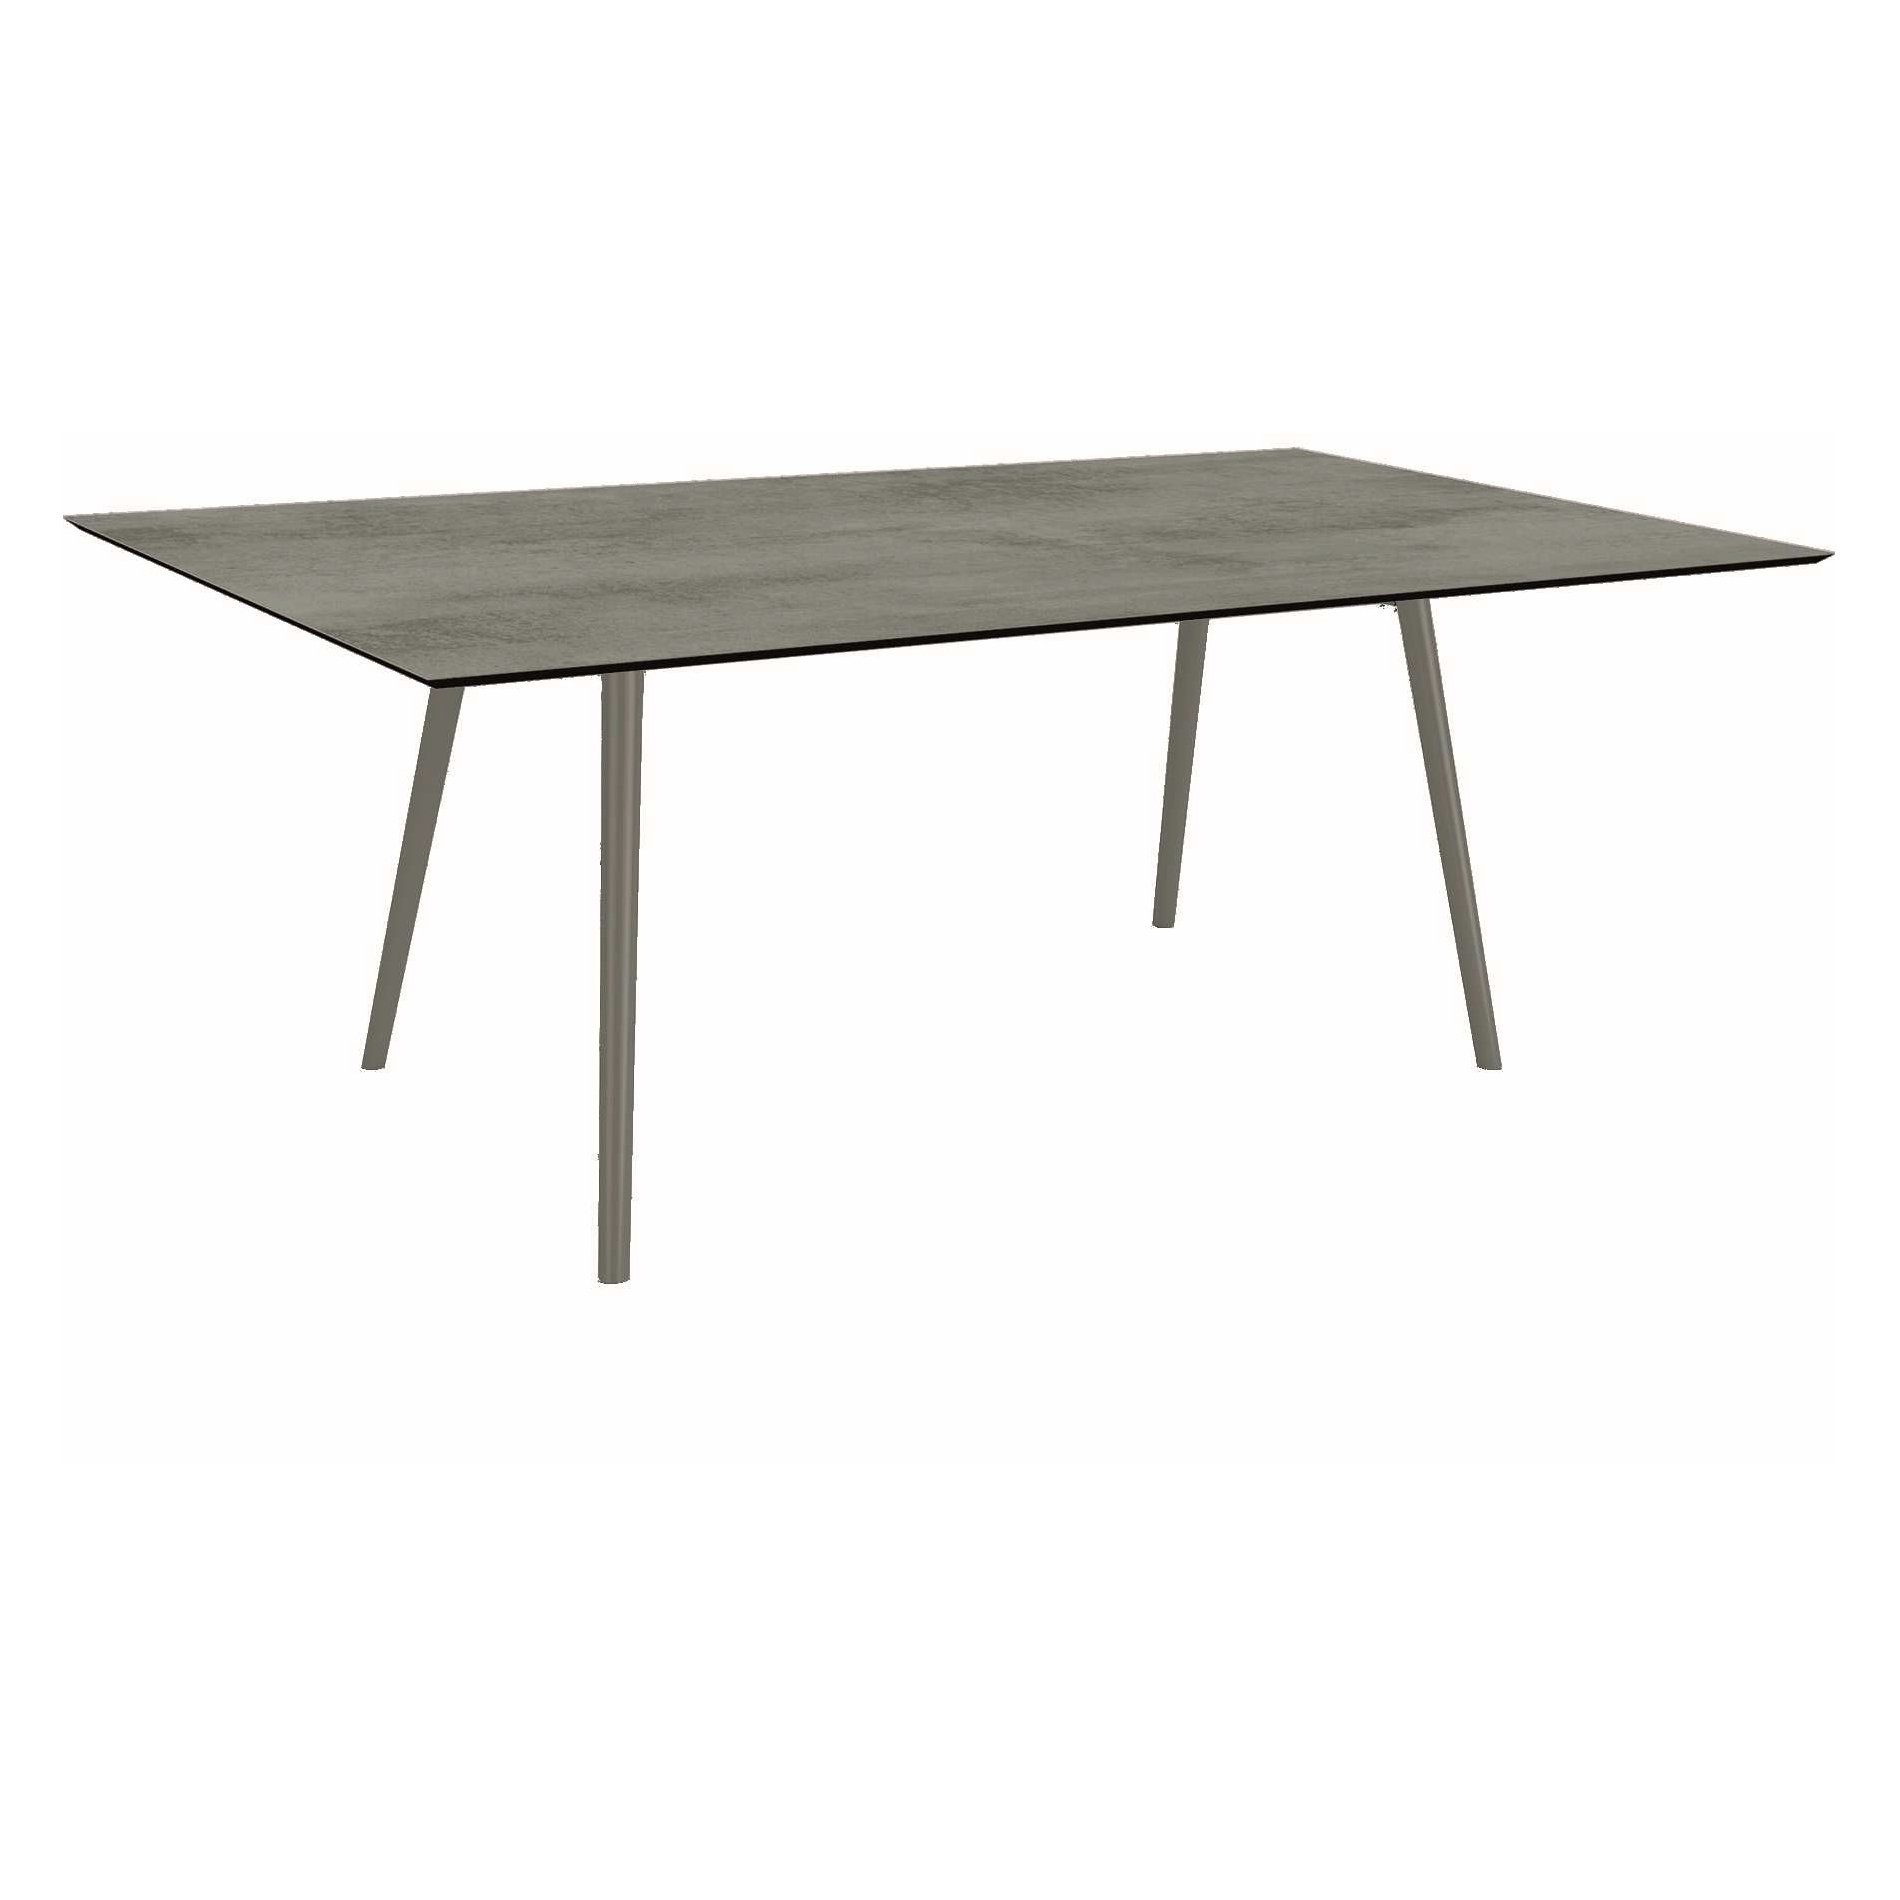 Stern Tisch "Interno", Größe 180x100cm, Alu graphit, Rundrohr, Tischplatte HPL Zement